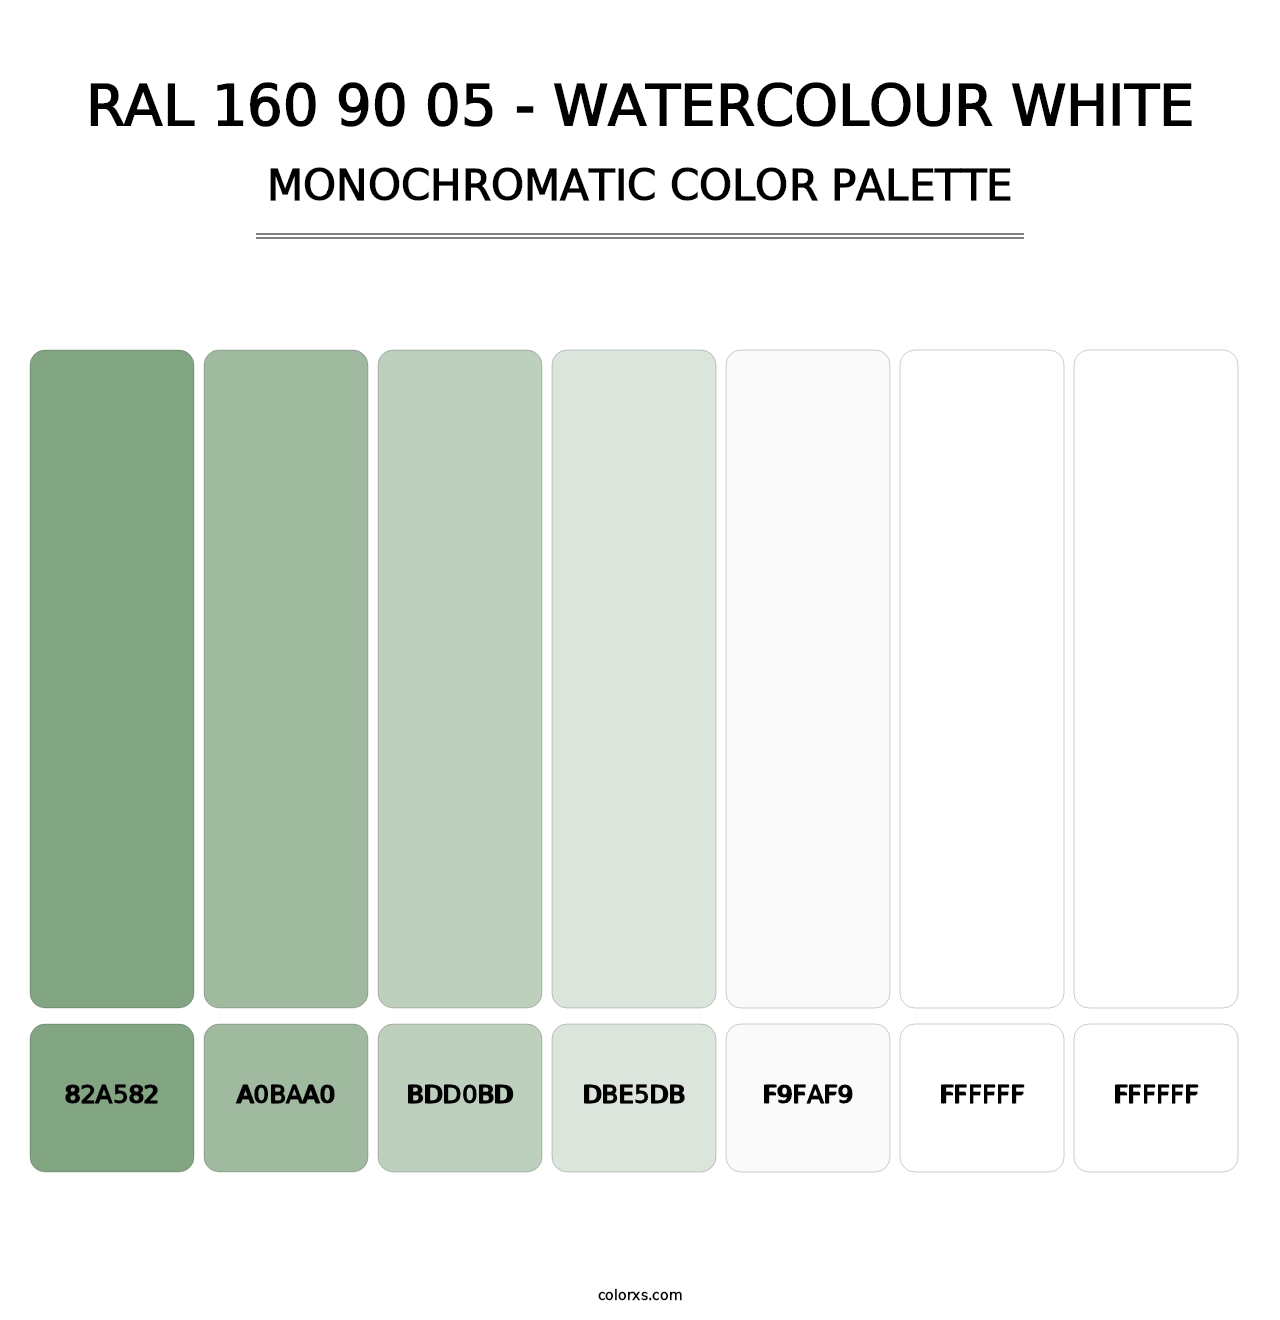 RAL 160 90 05 - Watercolour White - Monochromatic Color Palette